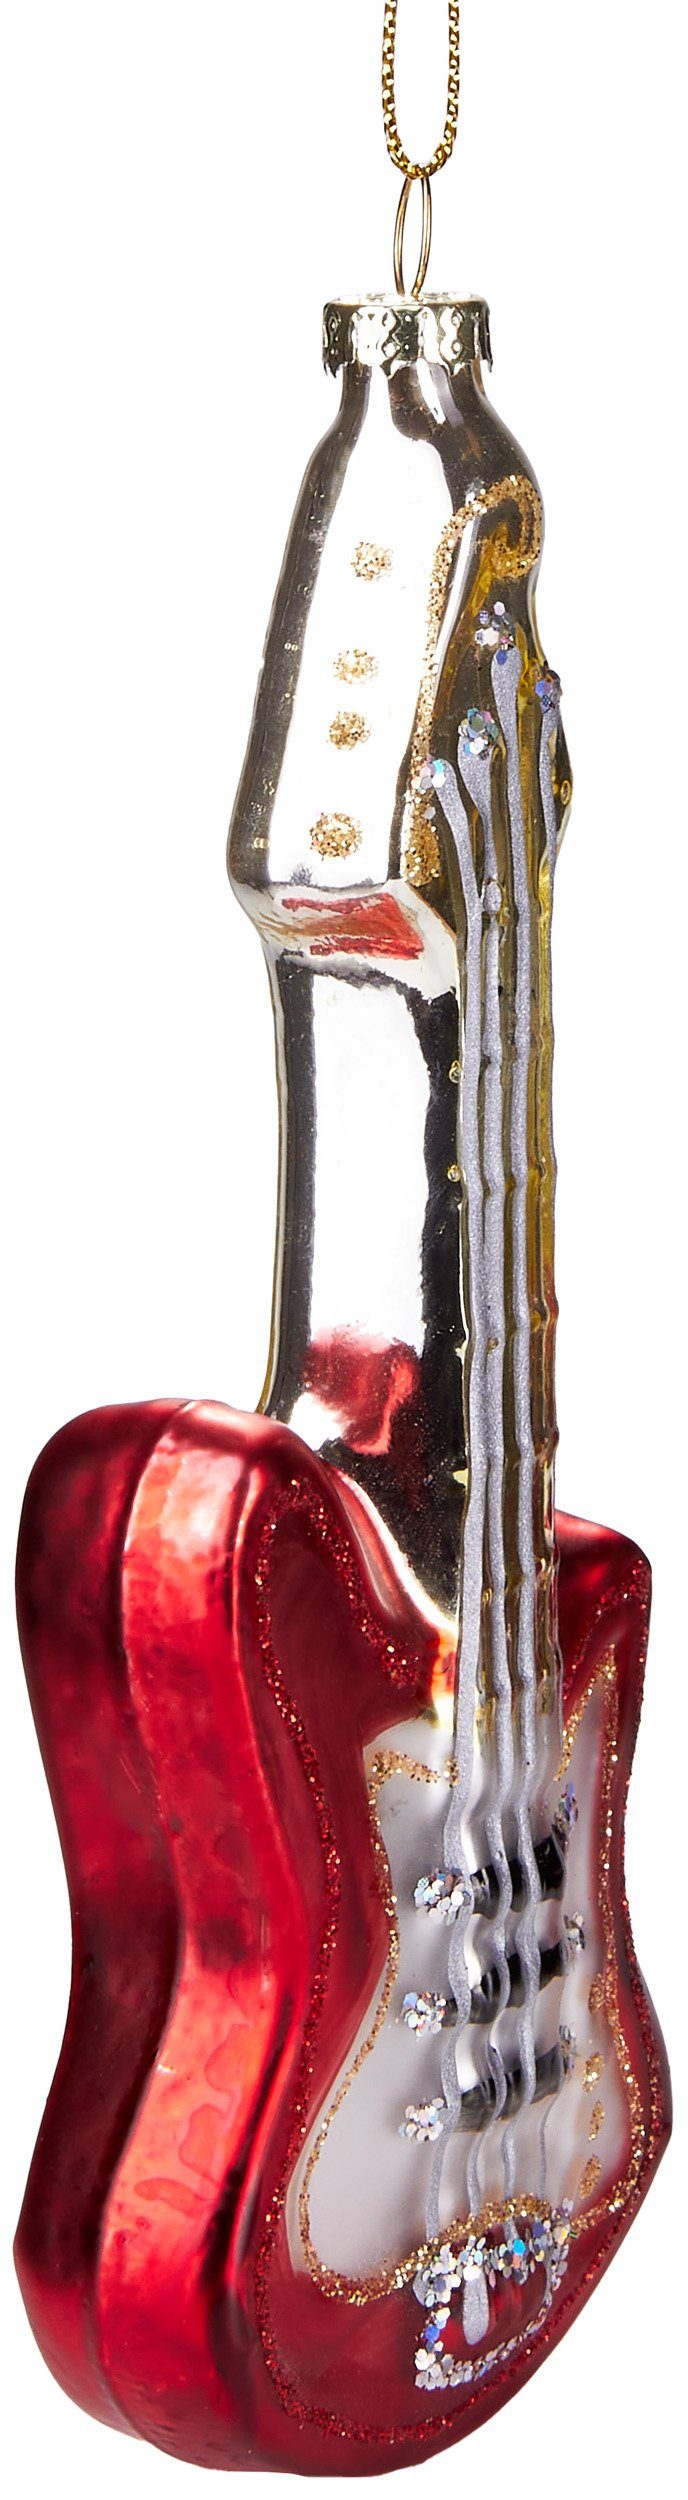 Handbemalte ca. Weihnachtskugel Weihnachtsdeko mundgeblasenes E-Gitarre, musikalische aus - BRUBAKER Glas, Unikat cm 15 Christbaumschmuck Rotweiße